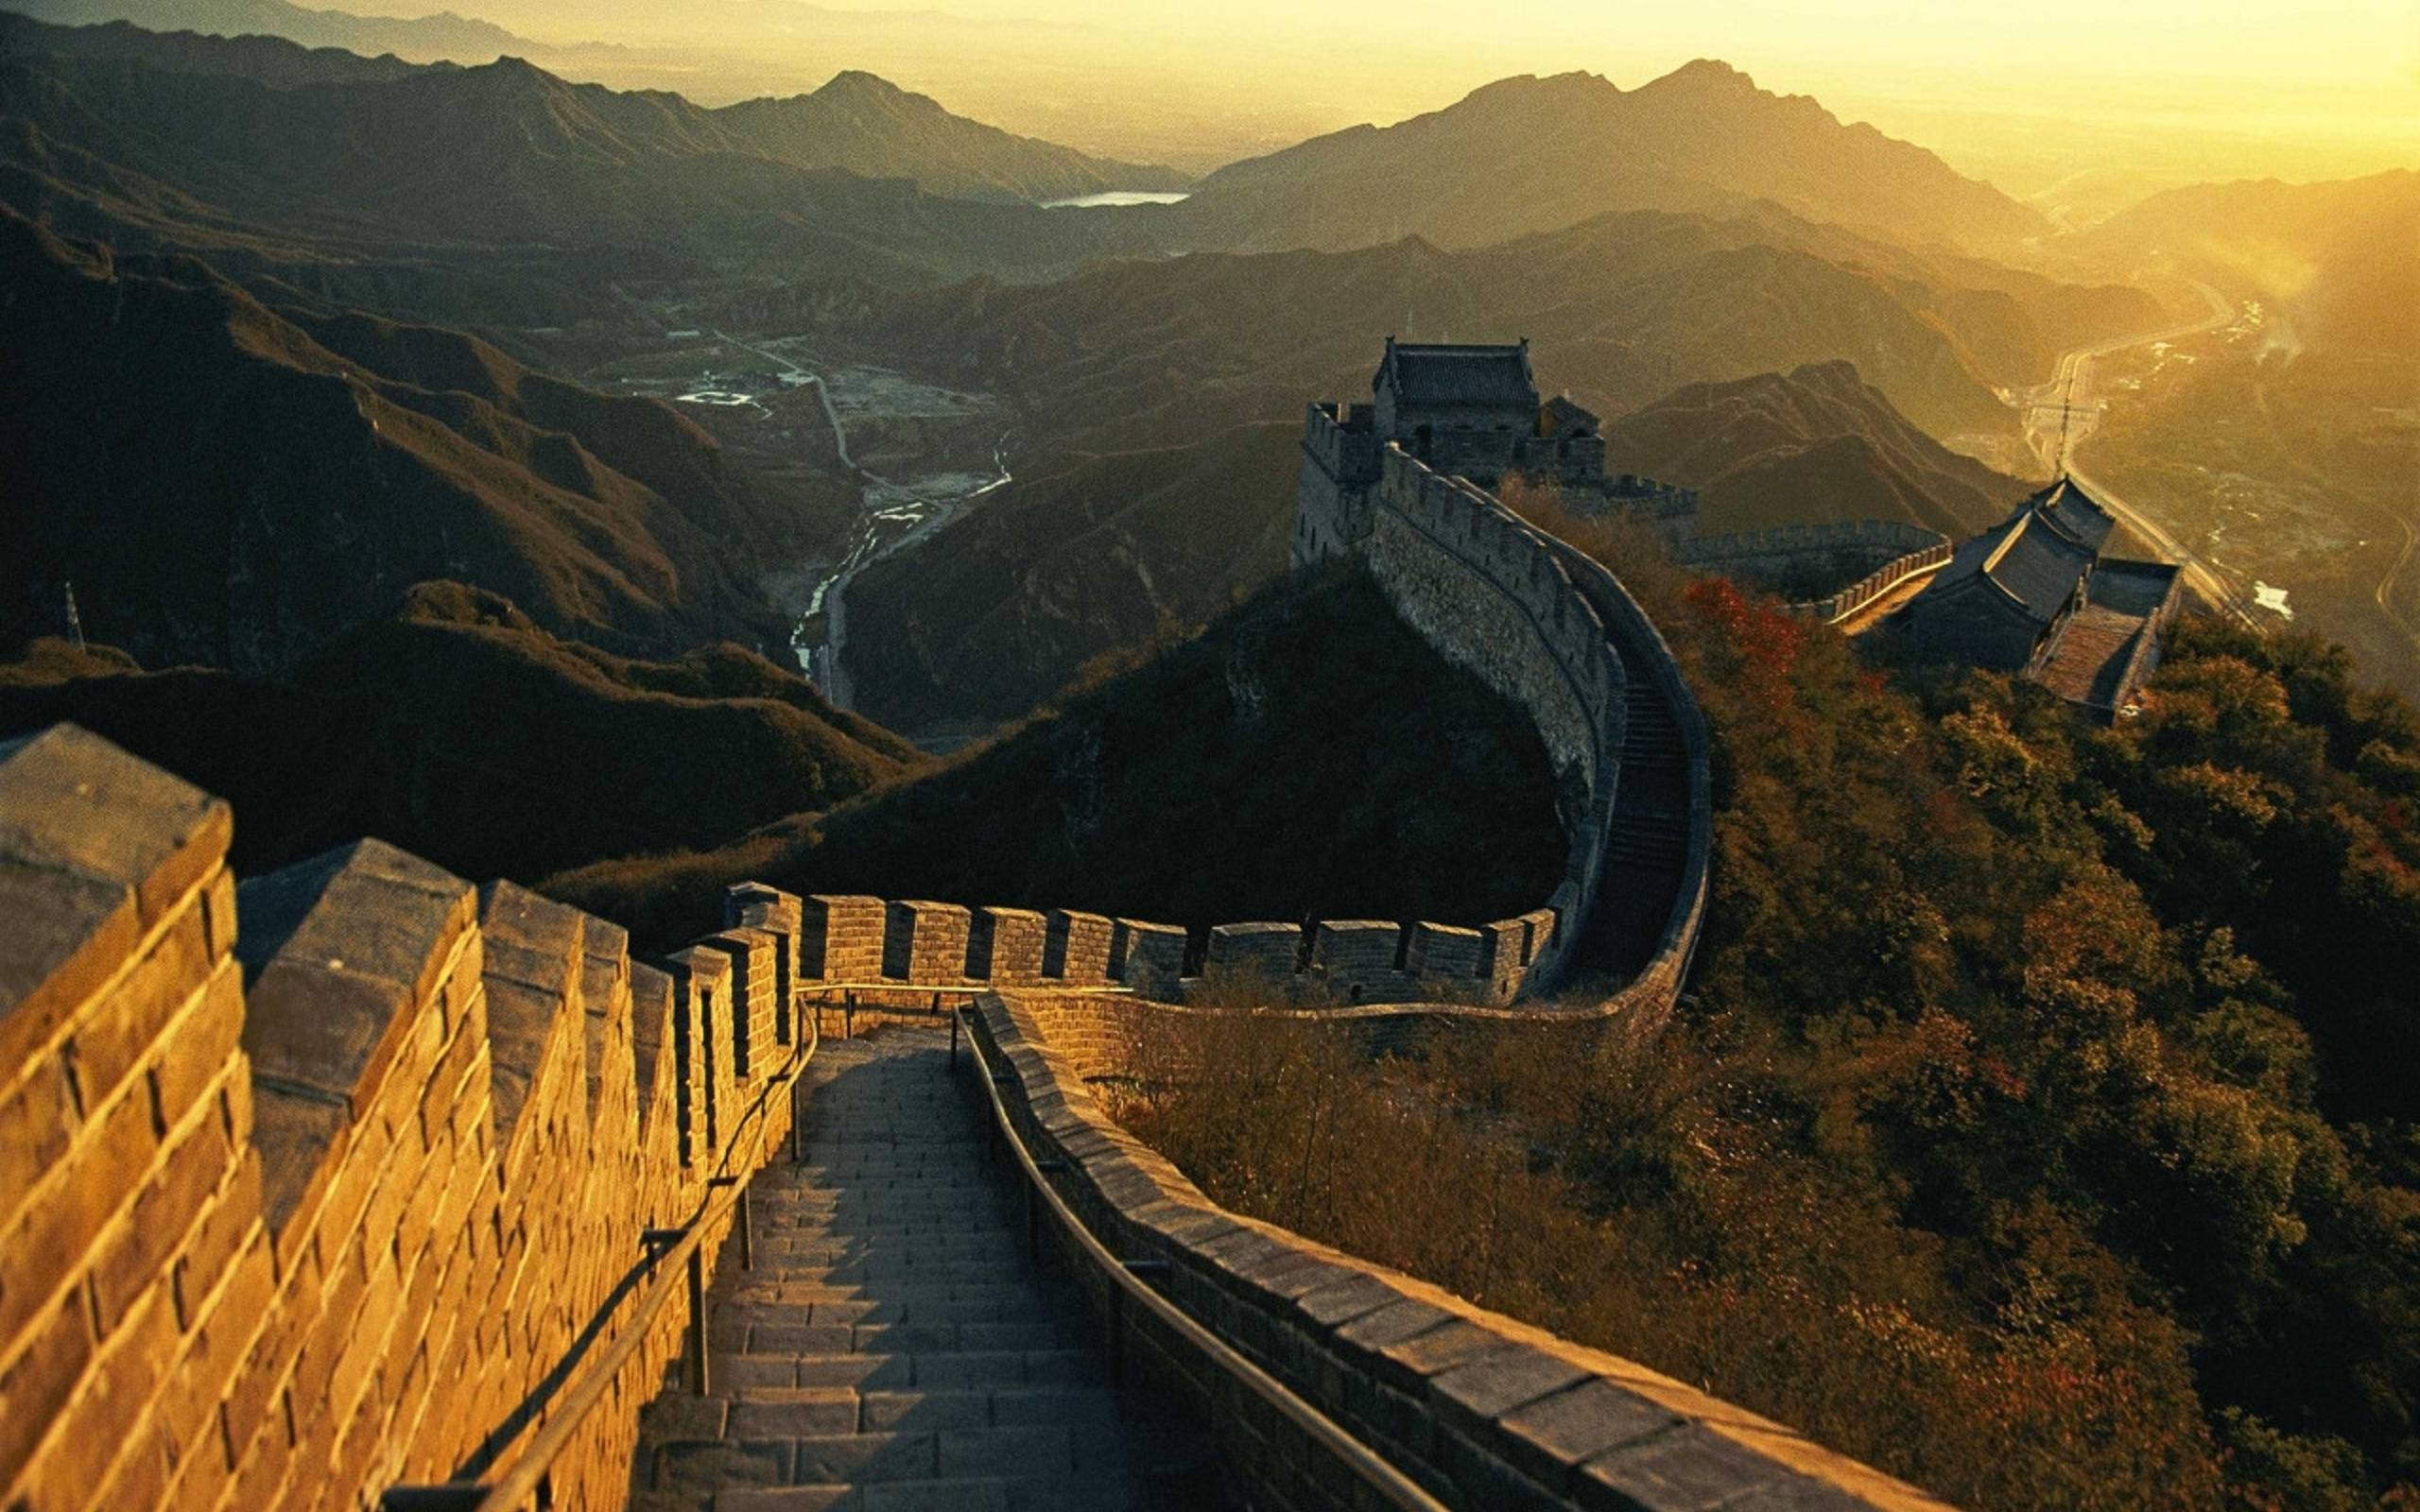 Самостоятельная экскурсия на великую китайскую стену